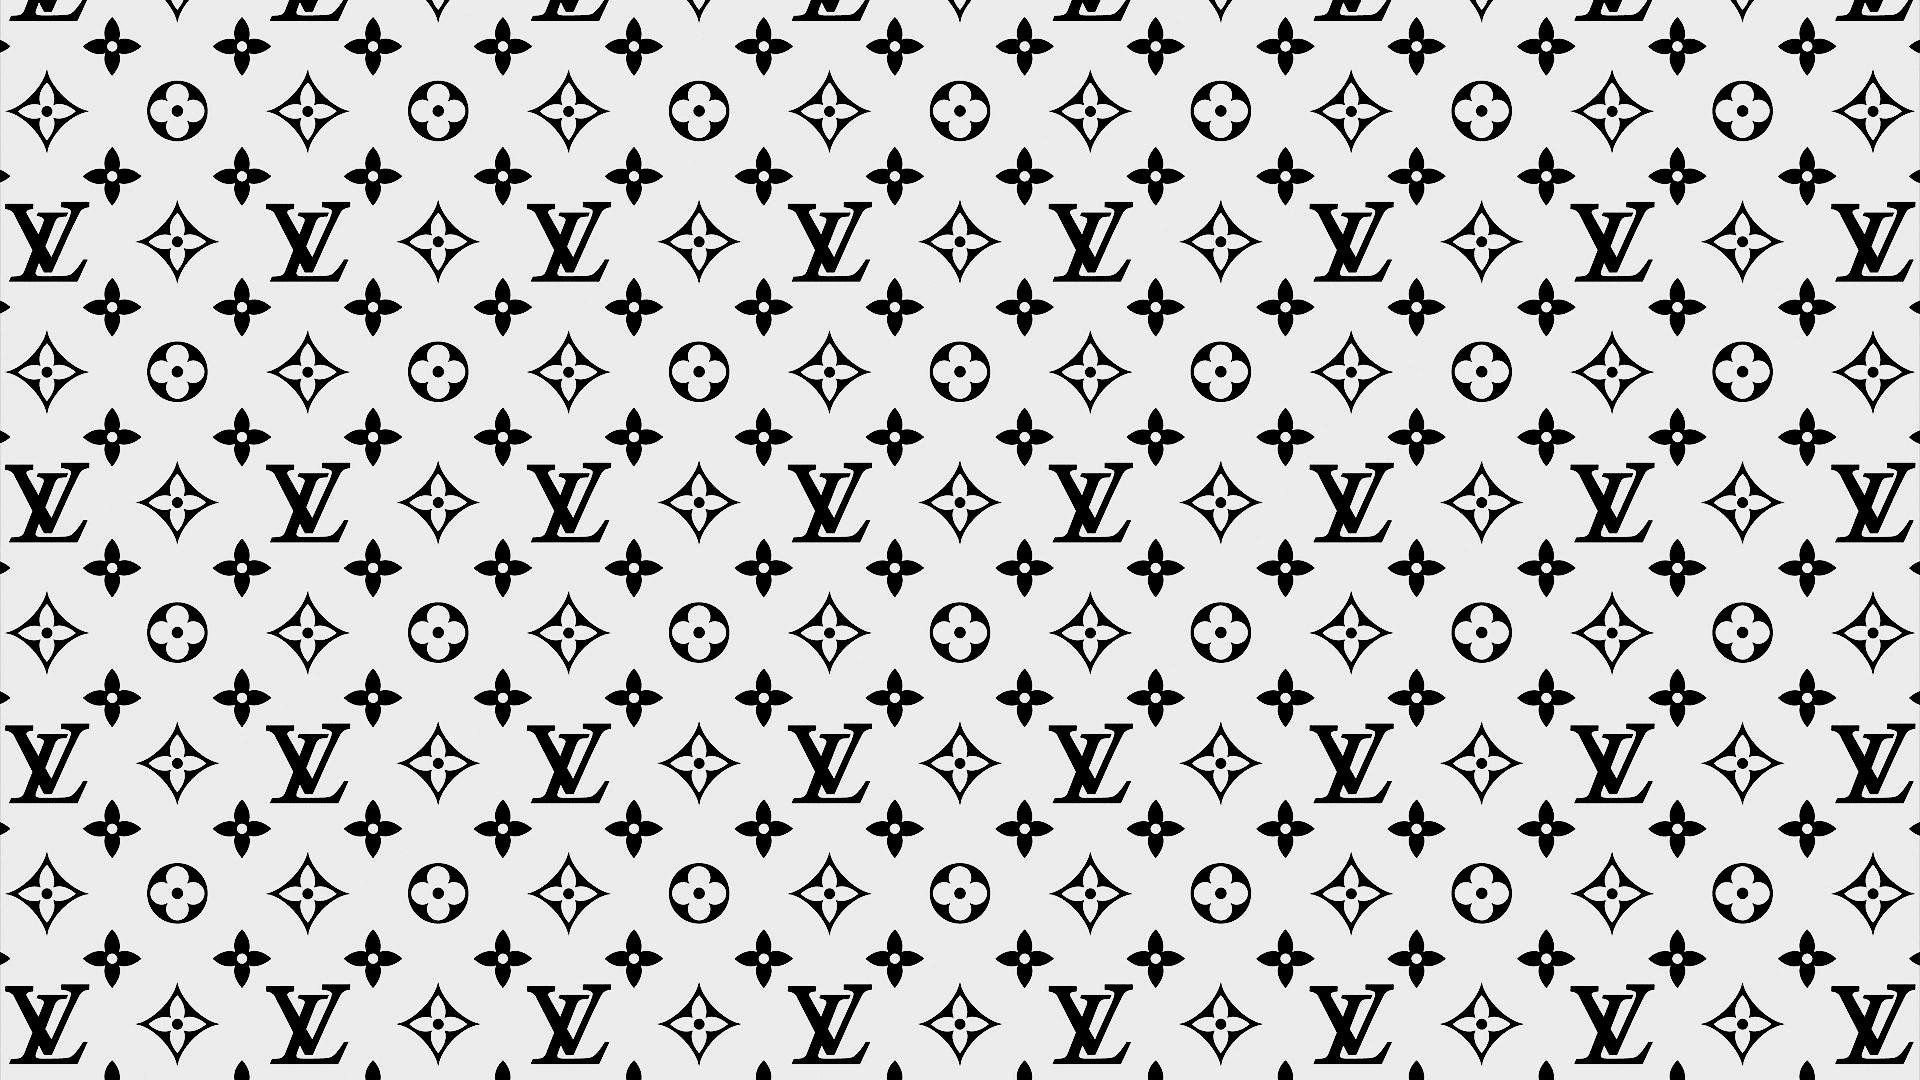 Louis Vuitton Supreme Wallpapers sẽ tạo nên nét độc đáo và sáng tạo cho điện thoại di động của bạn. Tận hưởng sự thông minh và mô phỏng của các thiết kế này đến từ thương hiệu Louis Vuitton và Supreme. Cùng ngắm nhìn hình nền này để có một trải nghiệm thật đáng nhớ!